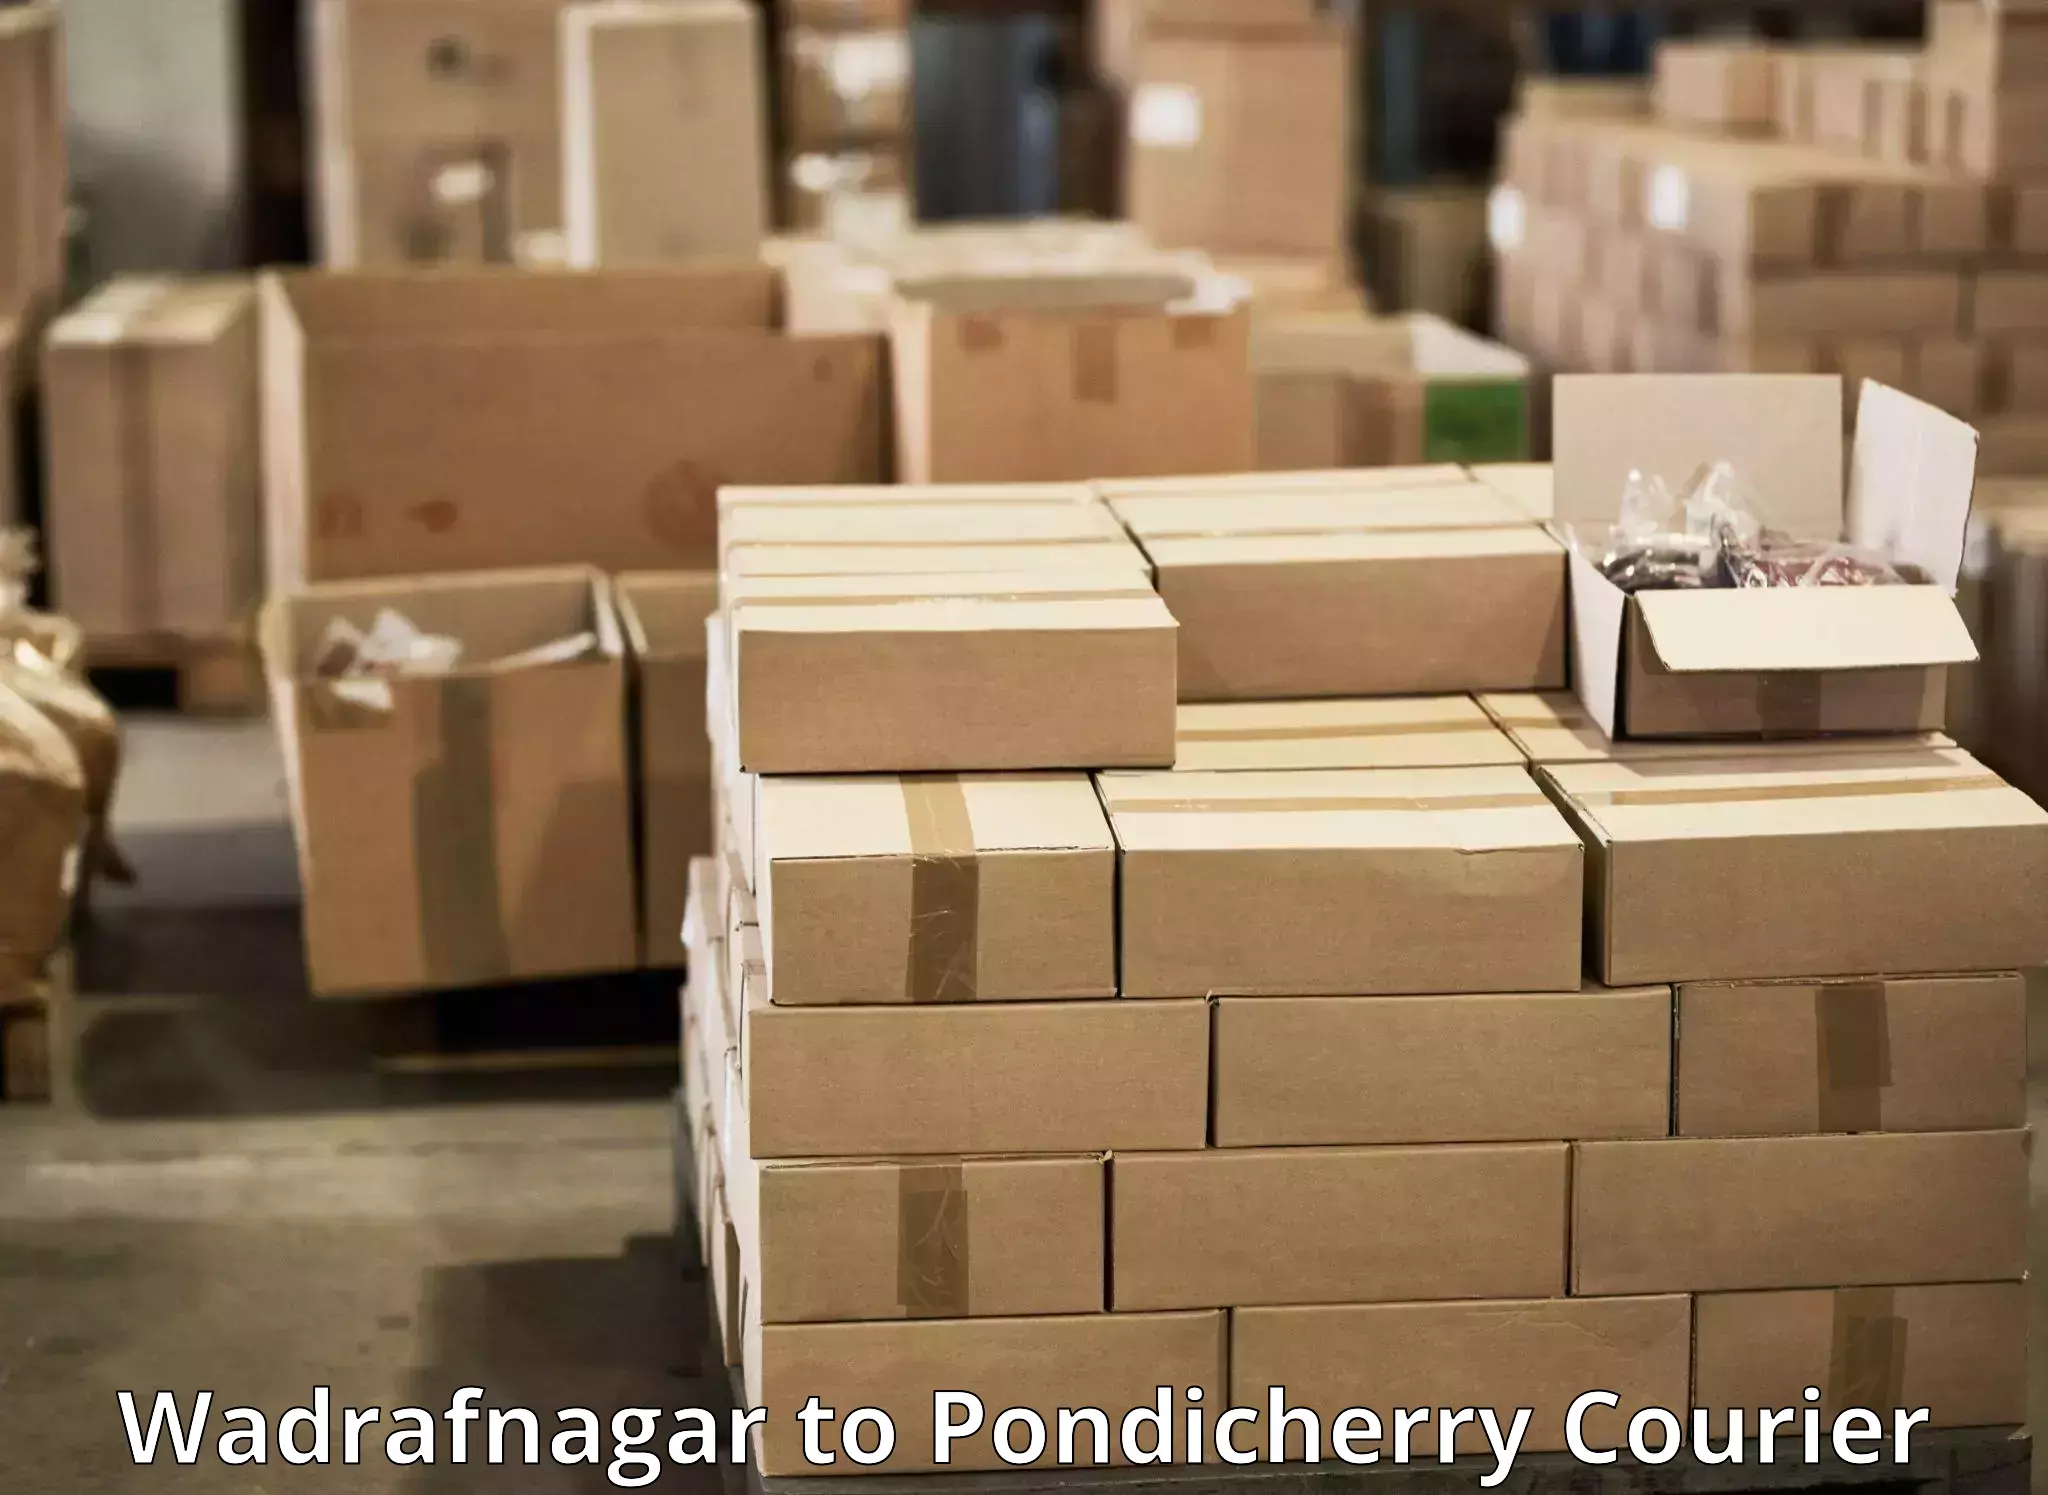 Flexible delivery schedules Wadrafnagar to Pondicherry University